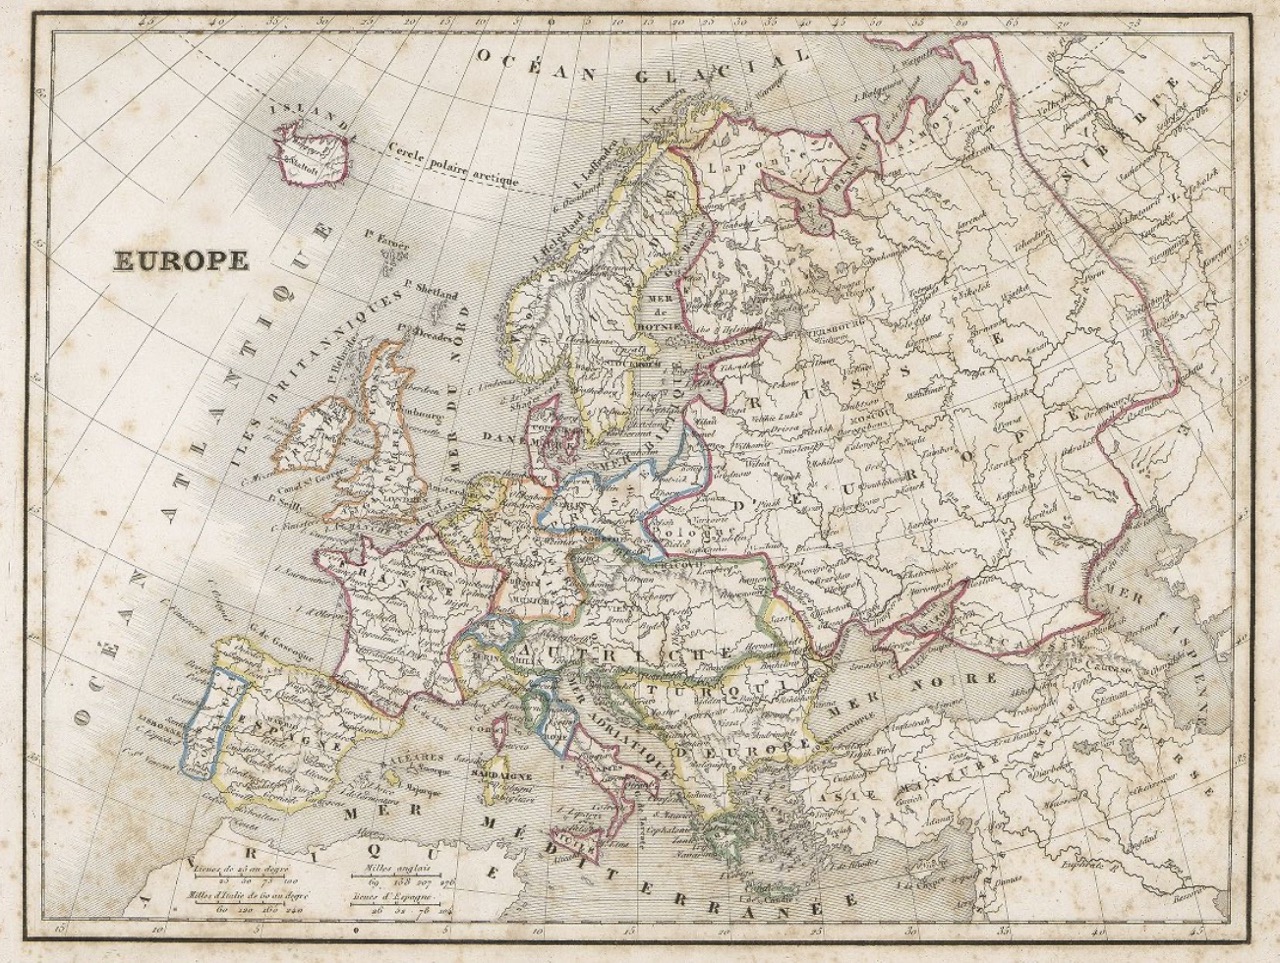 Monin: Atlas universel 1840, "Europe"